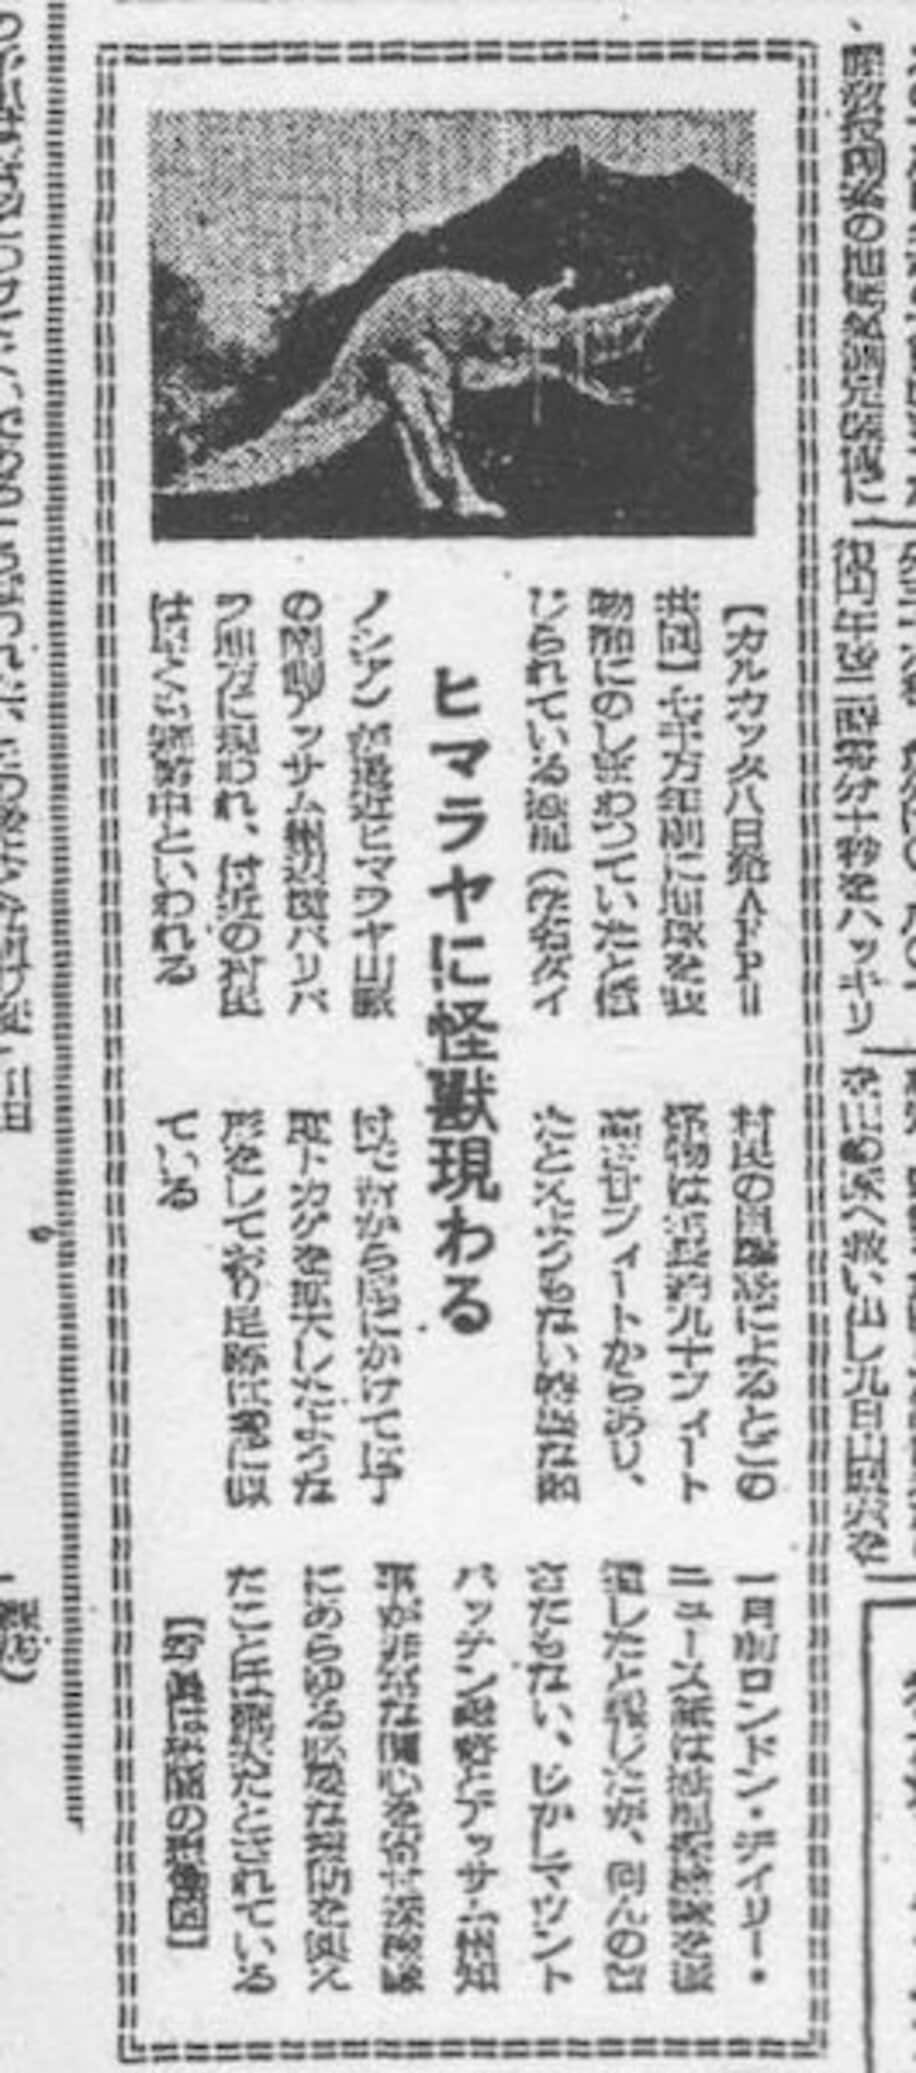  朝日新聞が報じた「ヒマラヤの怪獣」（1952年6月15日）